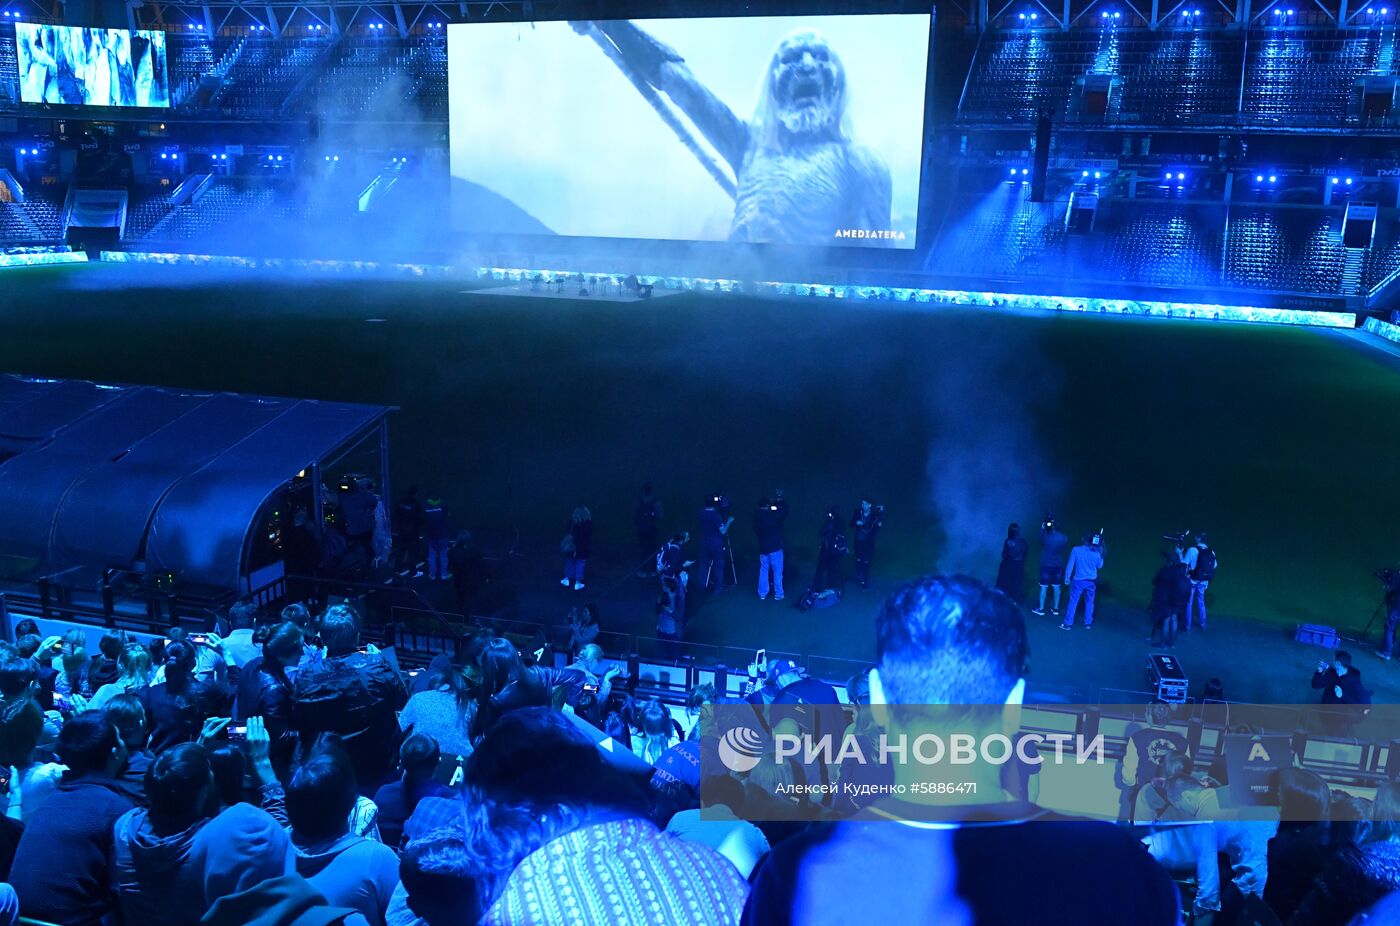 Финальный эпизод сериала "Игра престолов" на стадионе "РЖД Арена"